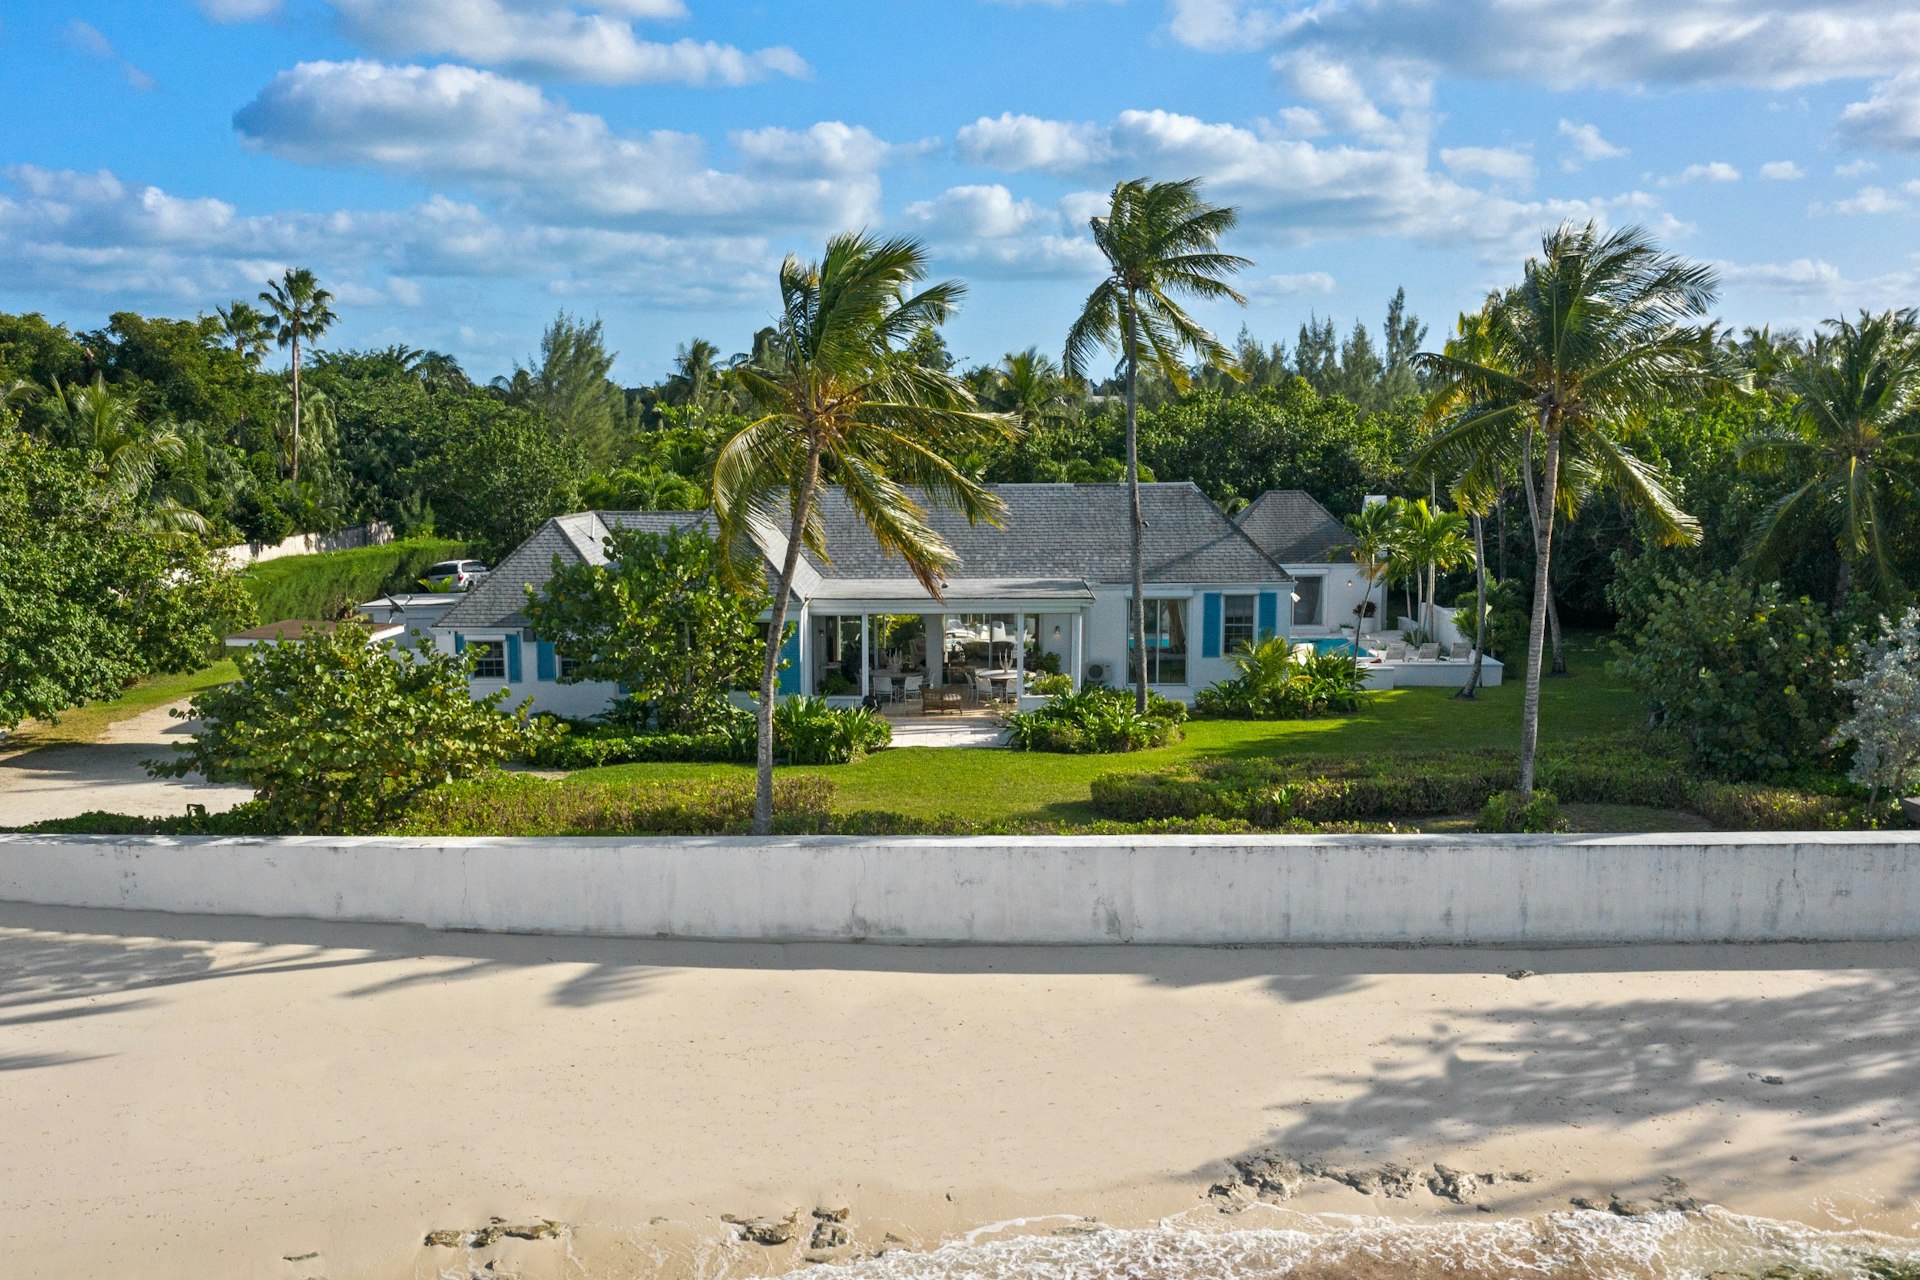 The exterior of Casurina Beach in the Bahamas